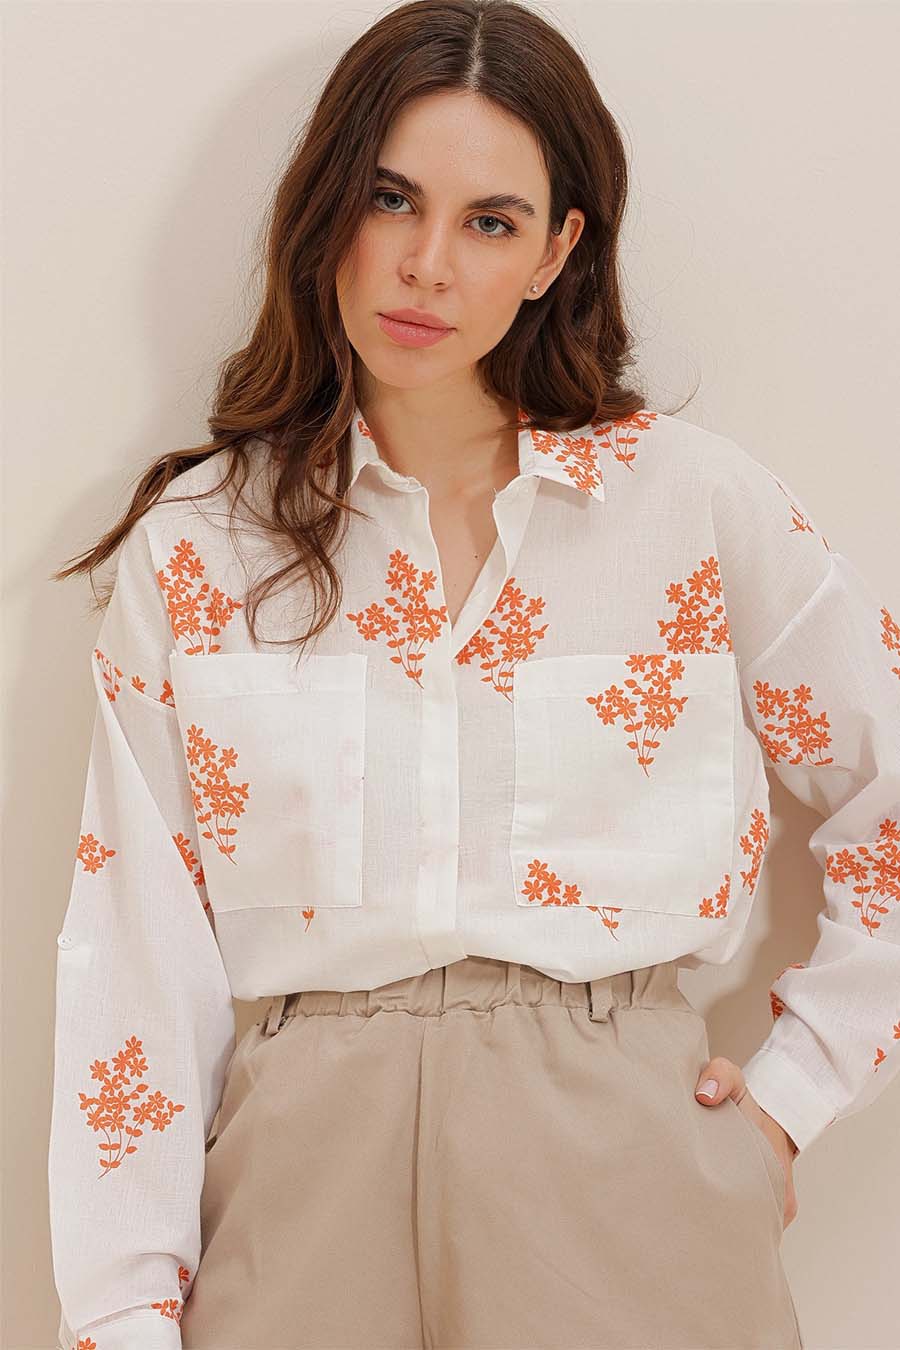 Γυναικείο πουκάμισο Darana, Λευκό/Πορτοκάλι 4